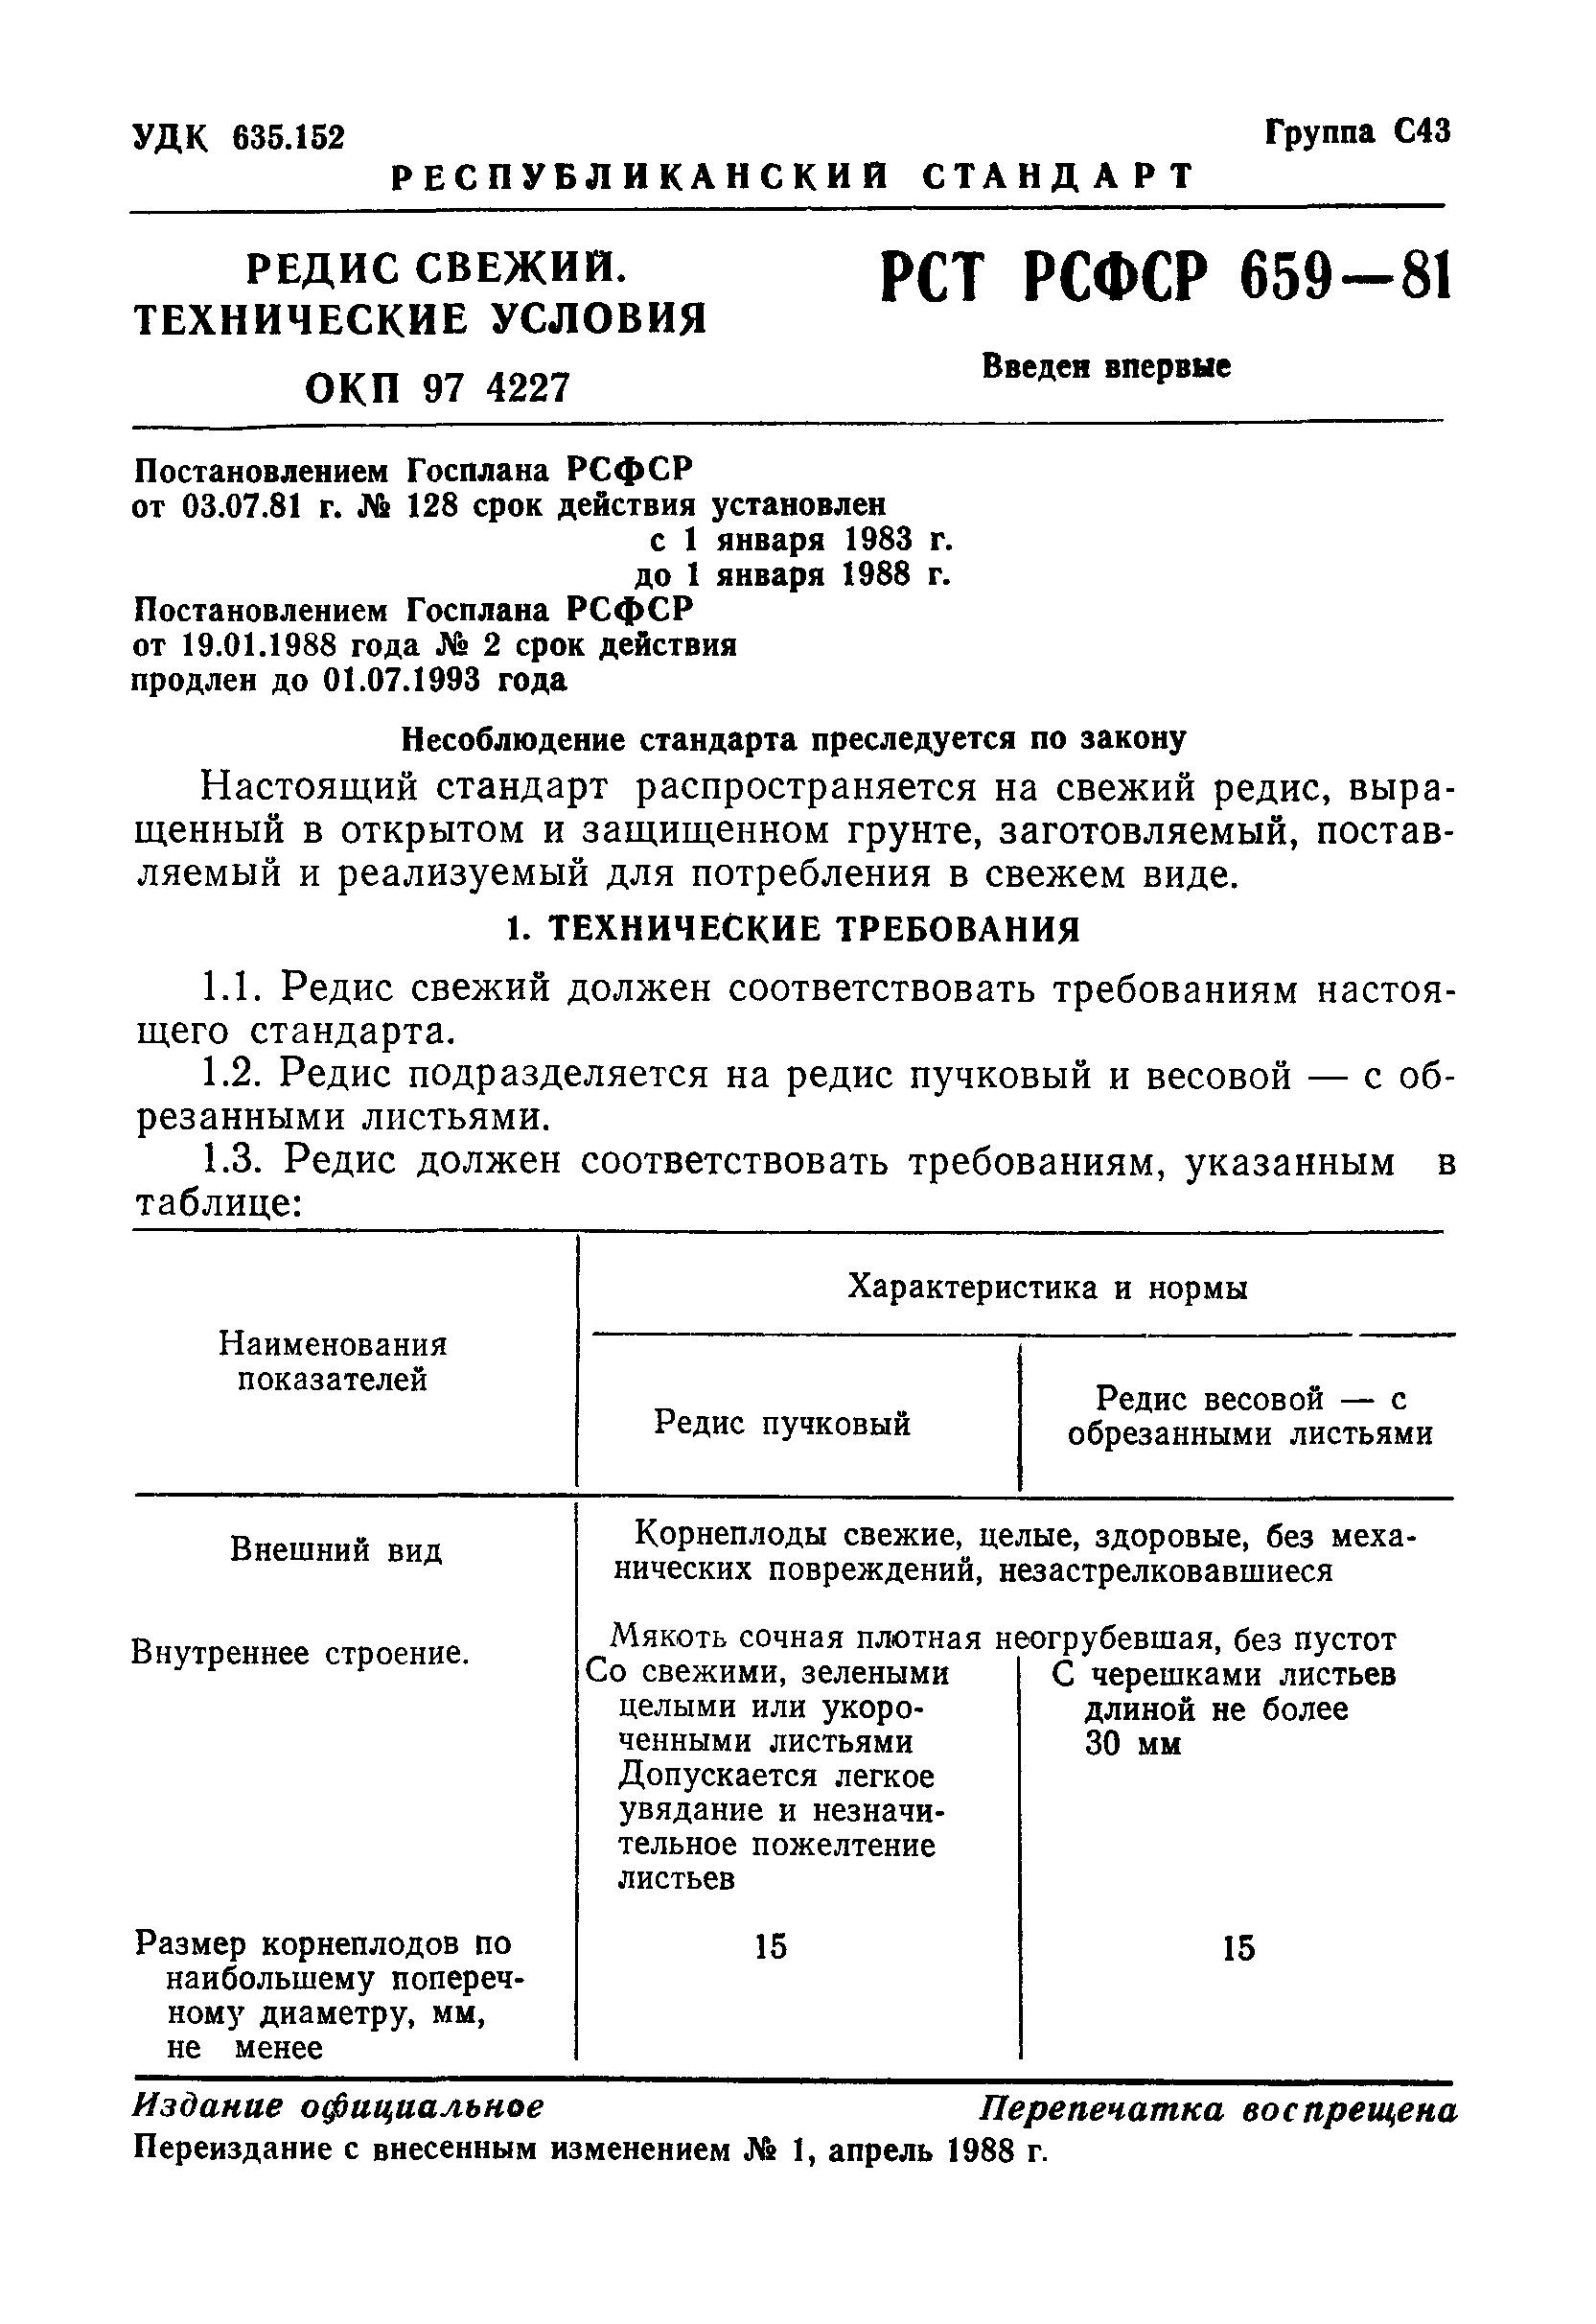 РСТ РСФСР 659-81